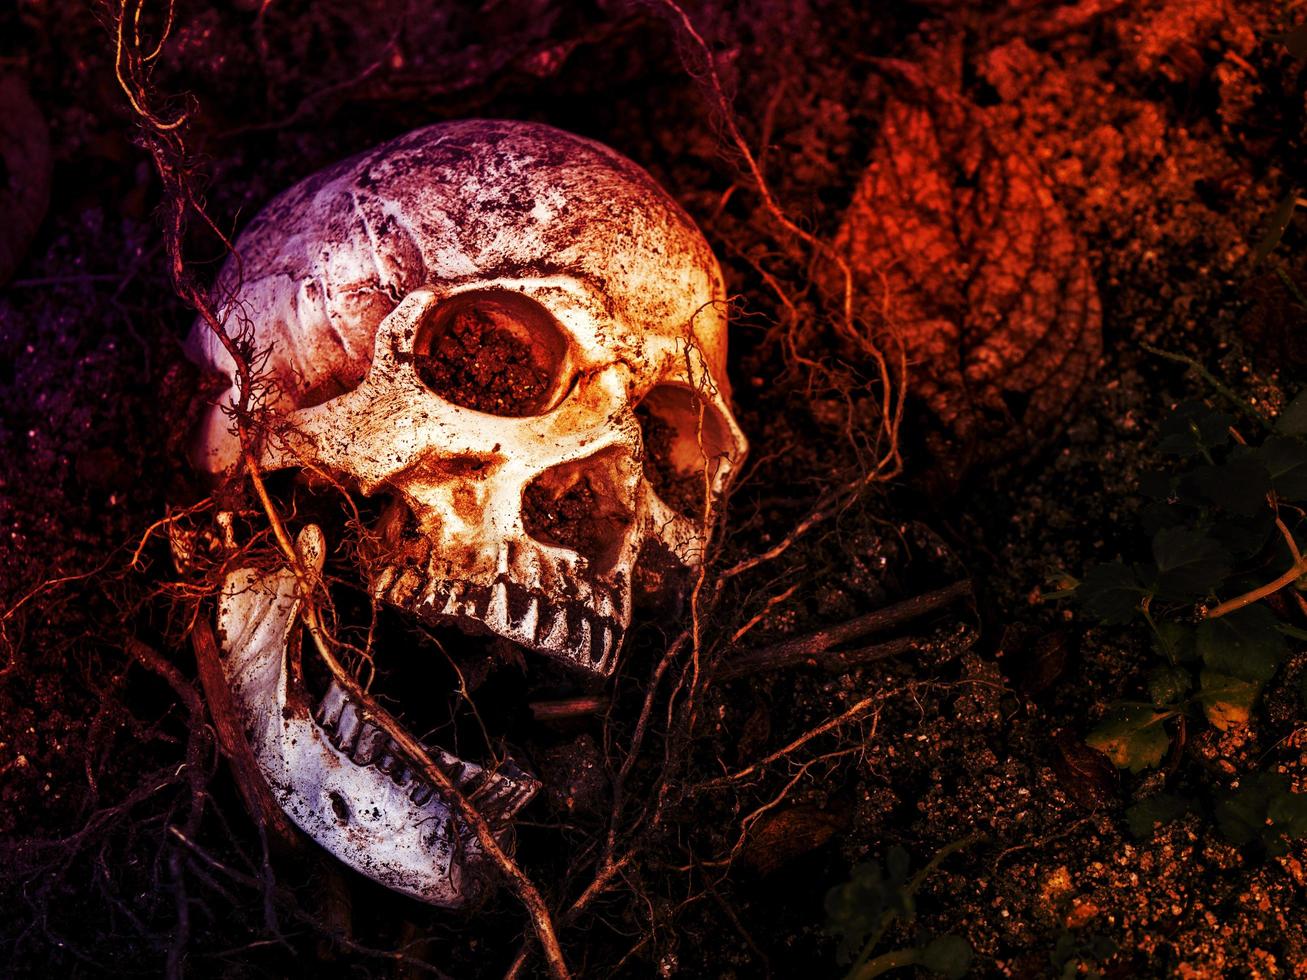 na frente do crânio humano enterrado no solo com as raízes da árvore ao lado. o crânio tem sujeira presa ao crânio. conceito de morte e halloween foto